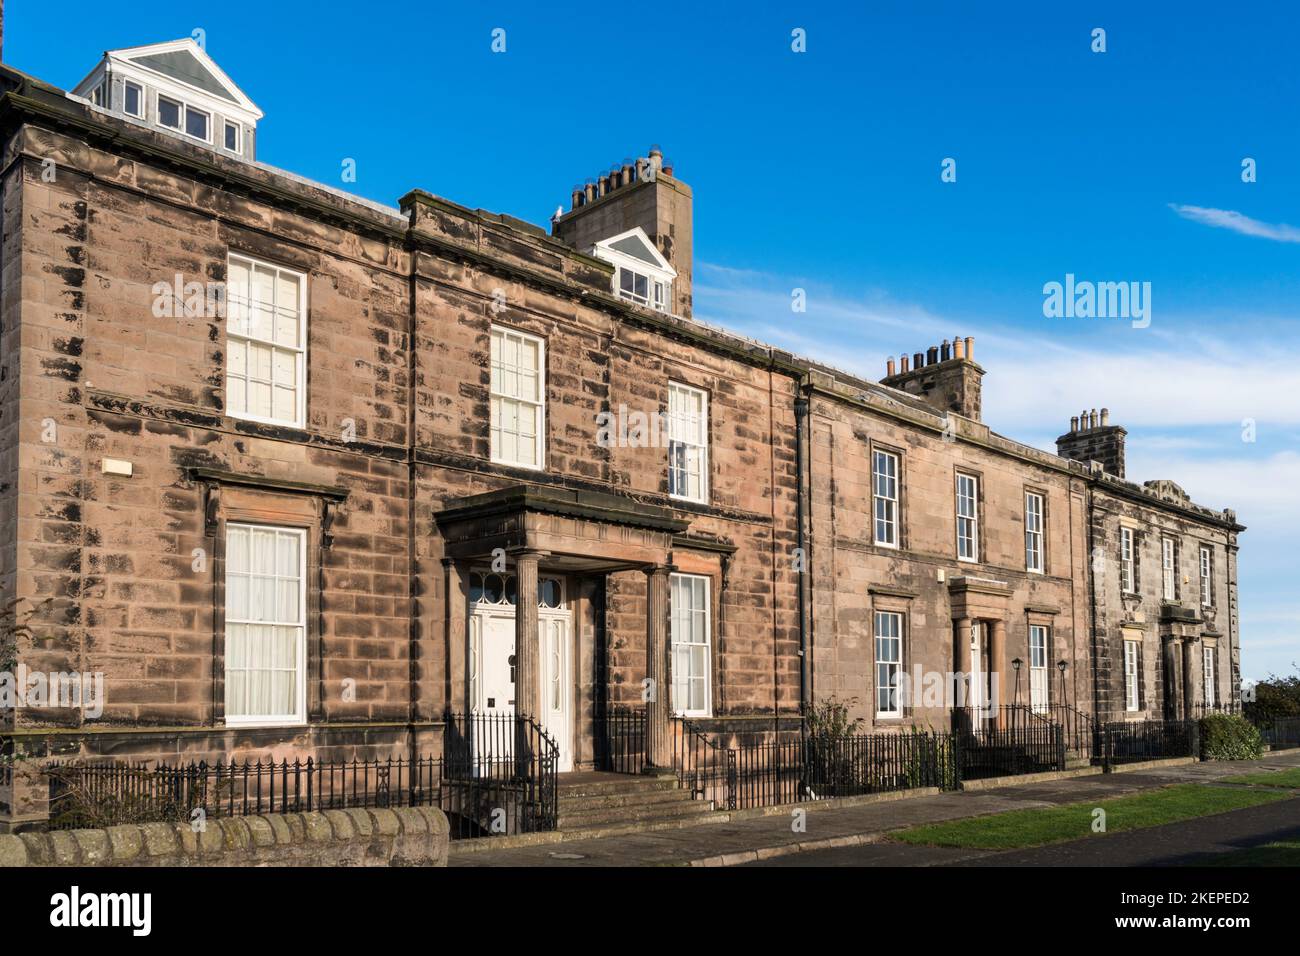 1,2 y 3 Wellington Terrace, listado de casas de pueblo del siglo 19th en Berwick Upon Tweed, Northumberland, Inglaterra, Reino Unido Foto de stock